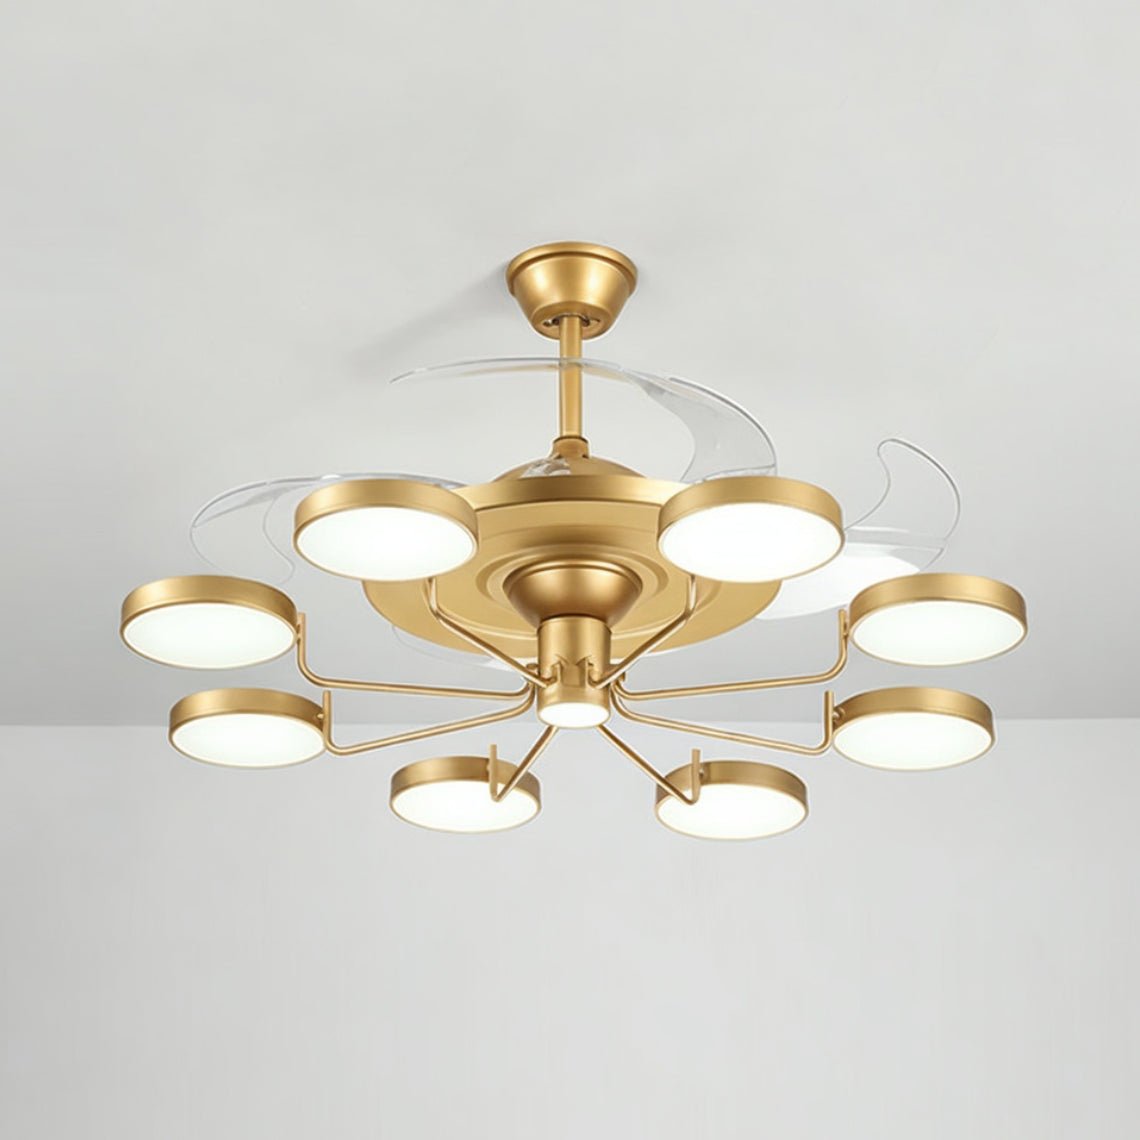 Casa 8 - Gold/Black Modern Ceiling Fan with Light 8 Light Fixtures - Serene Luminaire